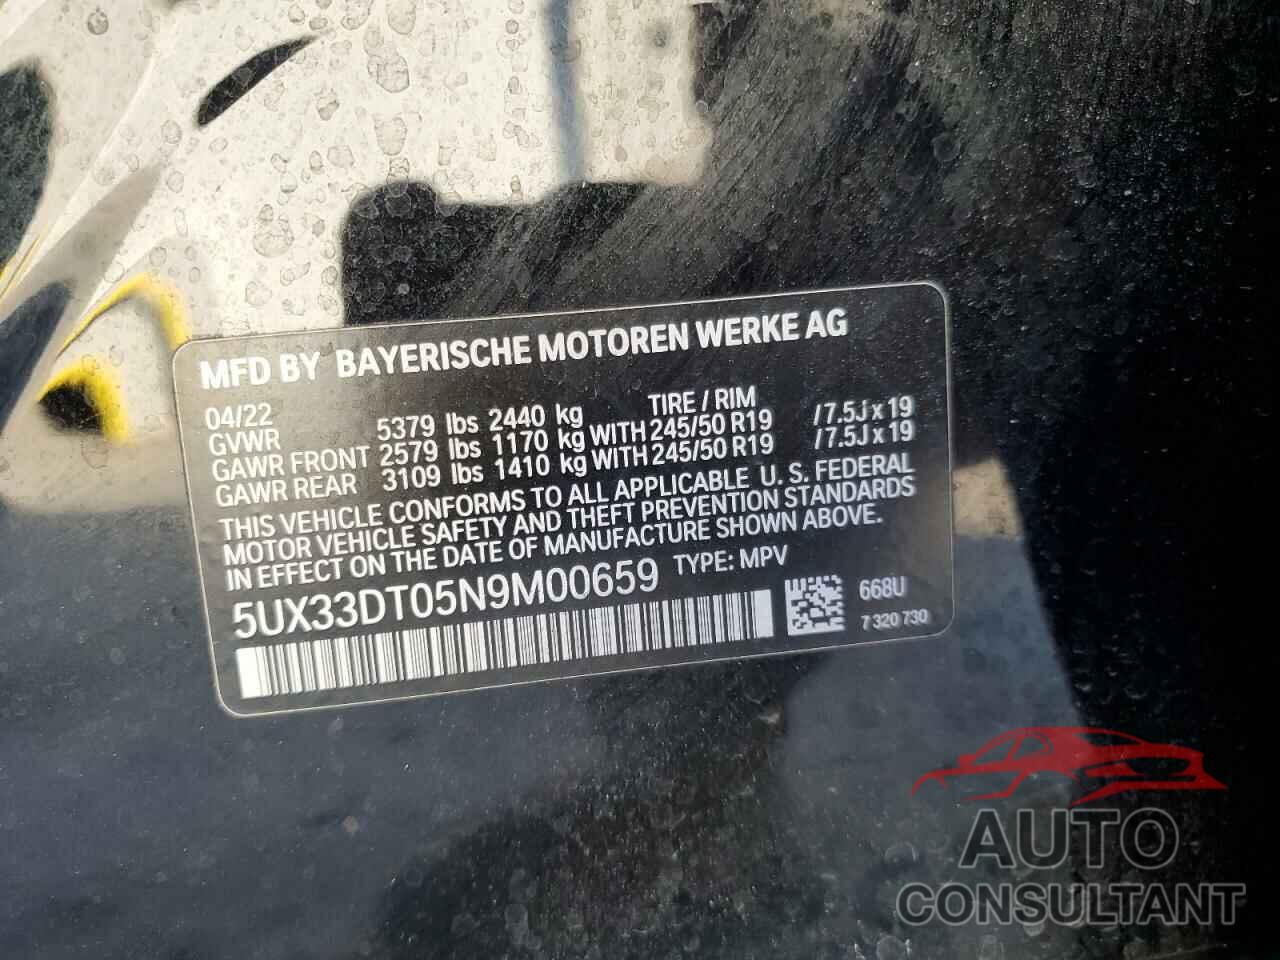 BMW X4 2022 - 5UX33DT05N9M00659